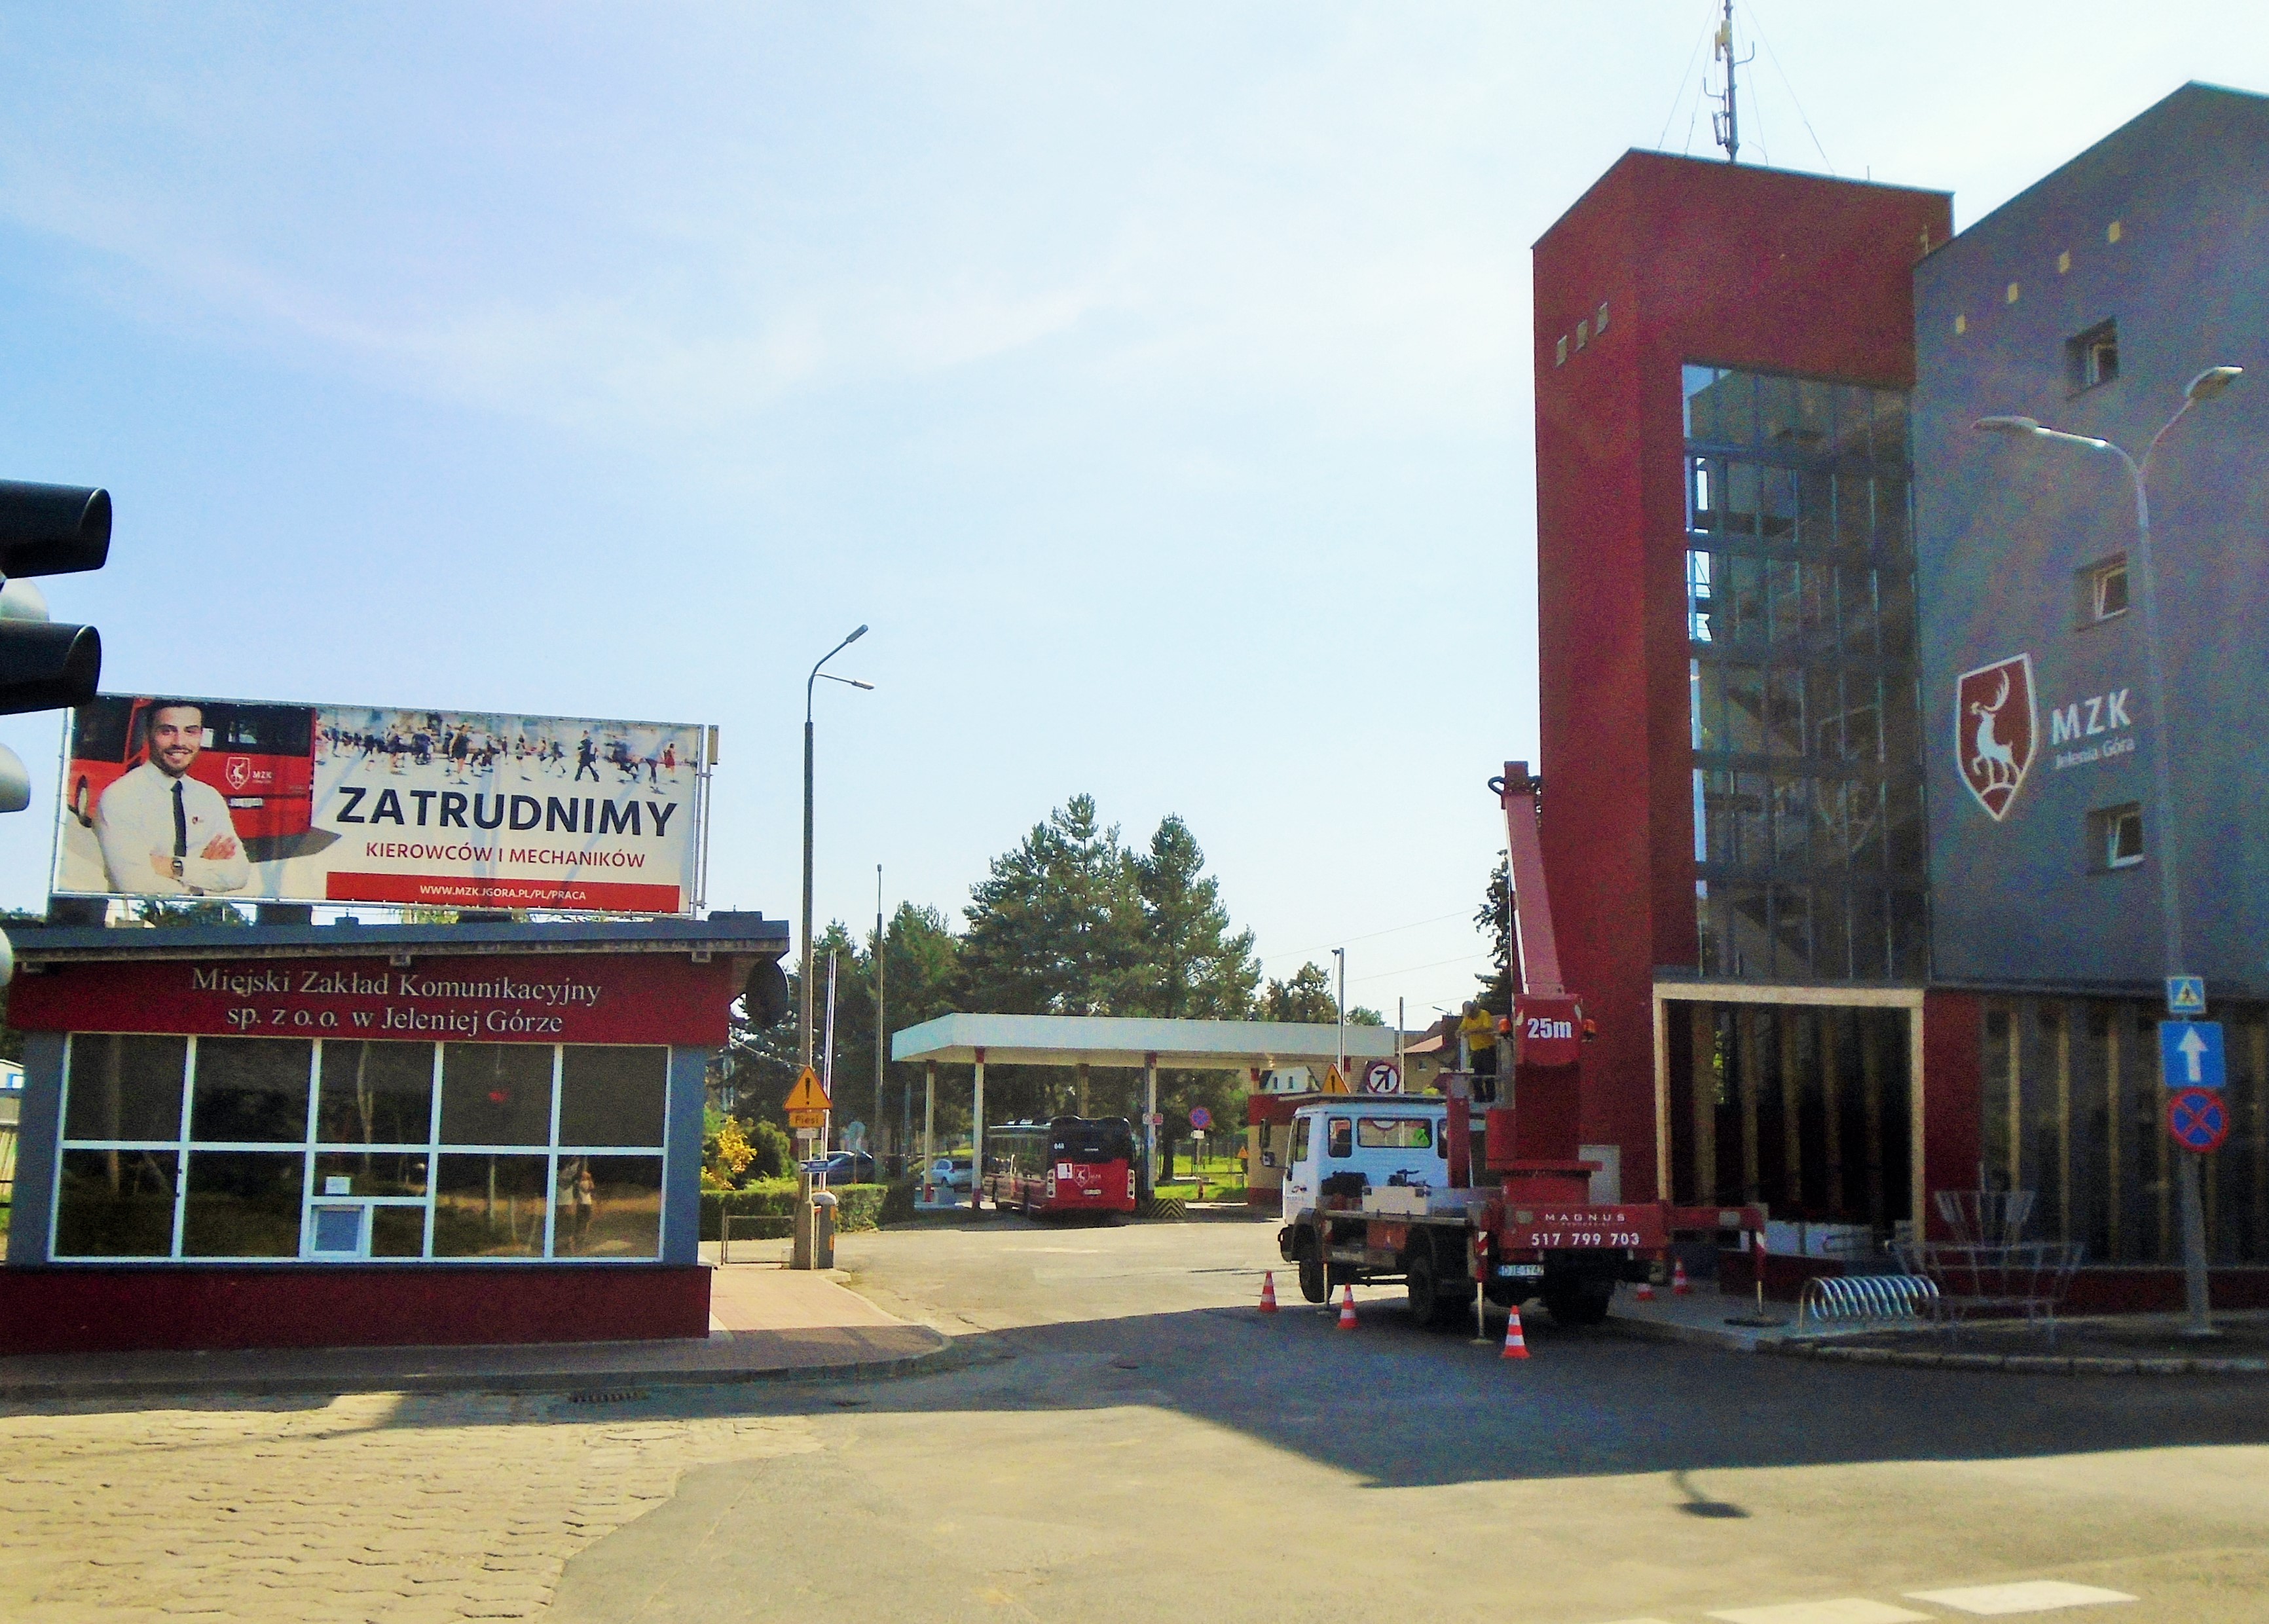 Garáž místního dopravního podniku MZK,ležící v půli cesty mezi Jel.Gorou a místní částí Cieplice